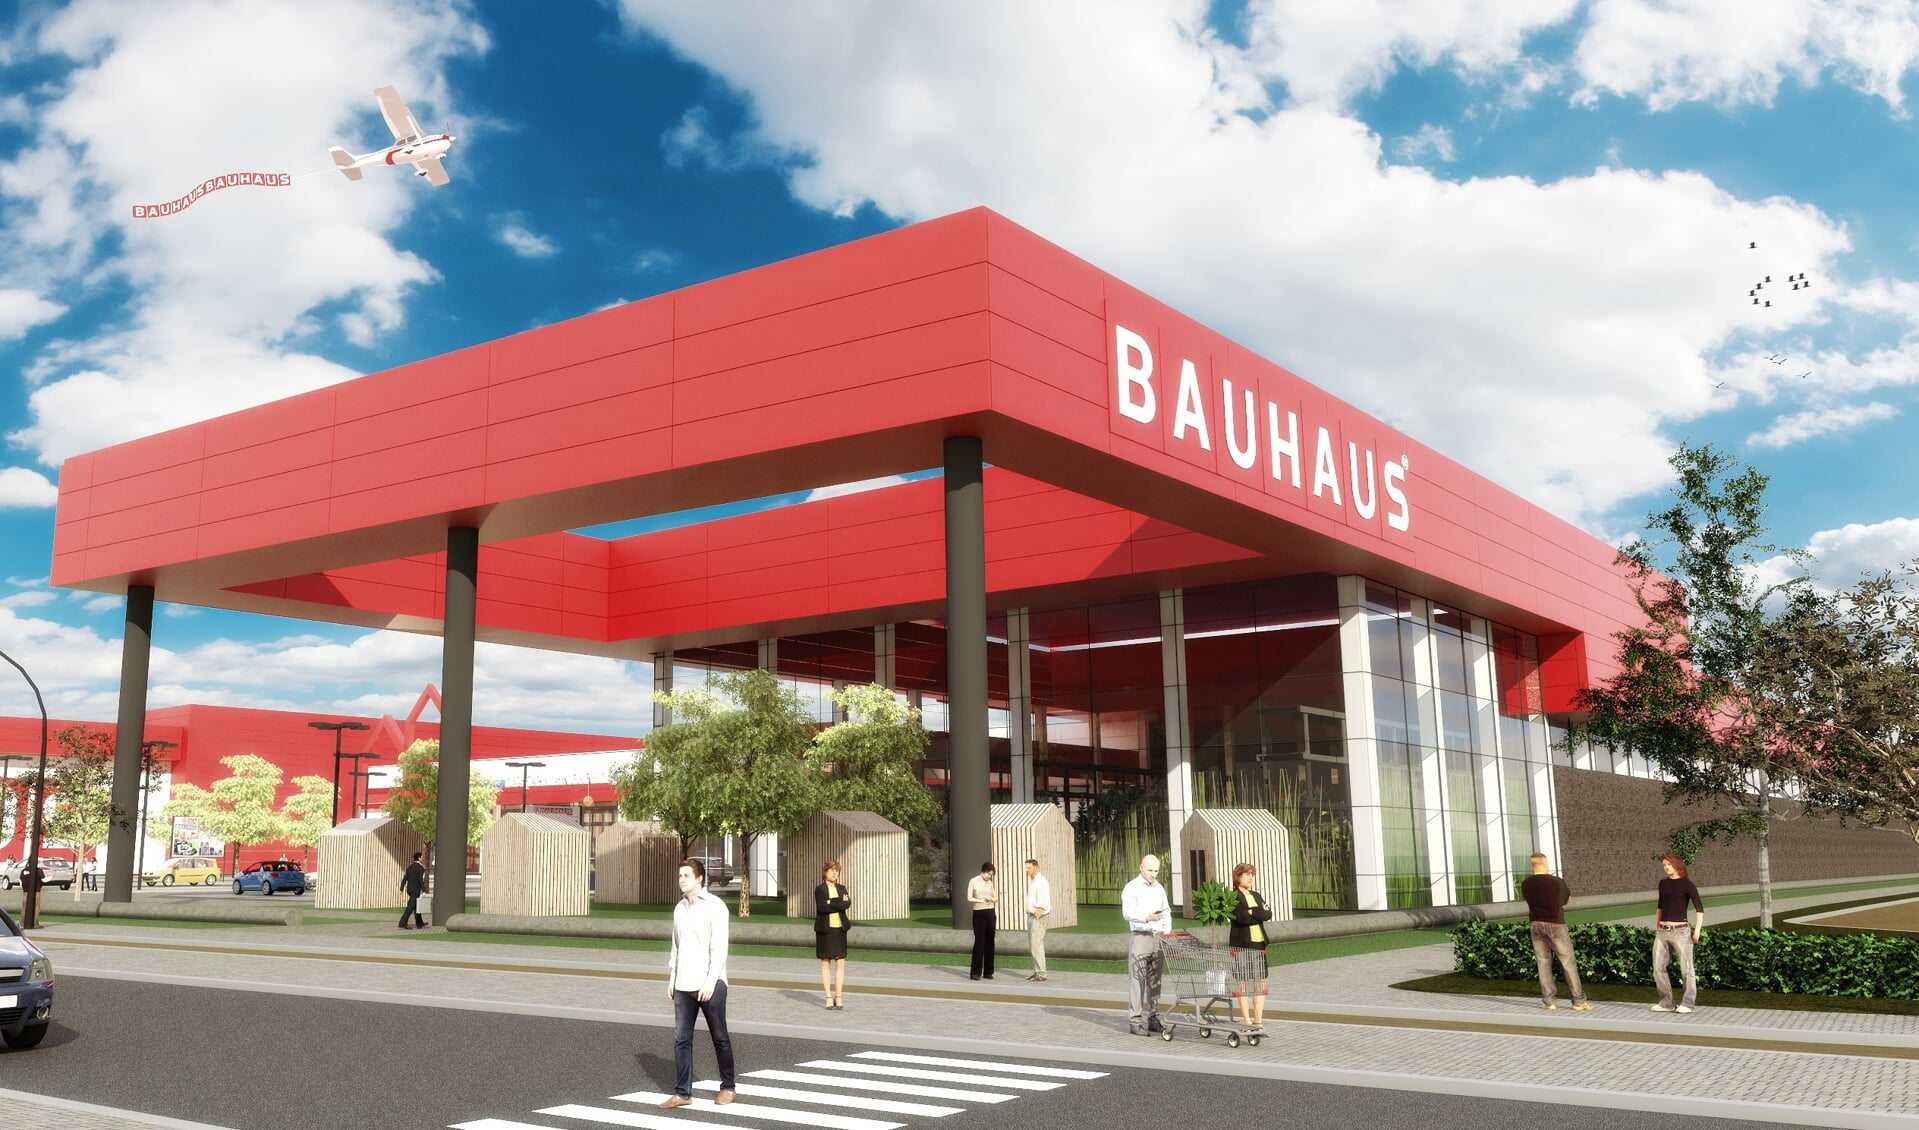 Ontwerp van de nieuw te realiseren Bauhaus langs de A1 in Amersfoort.